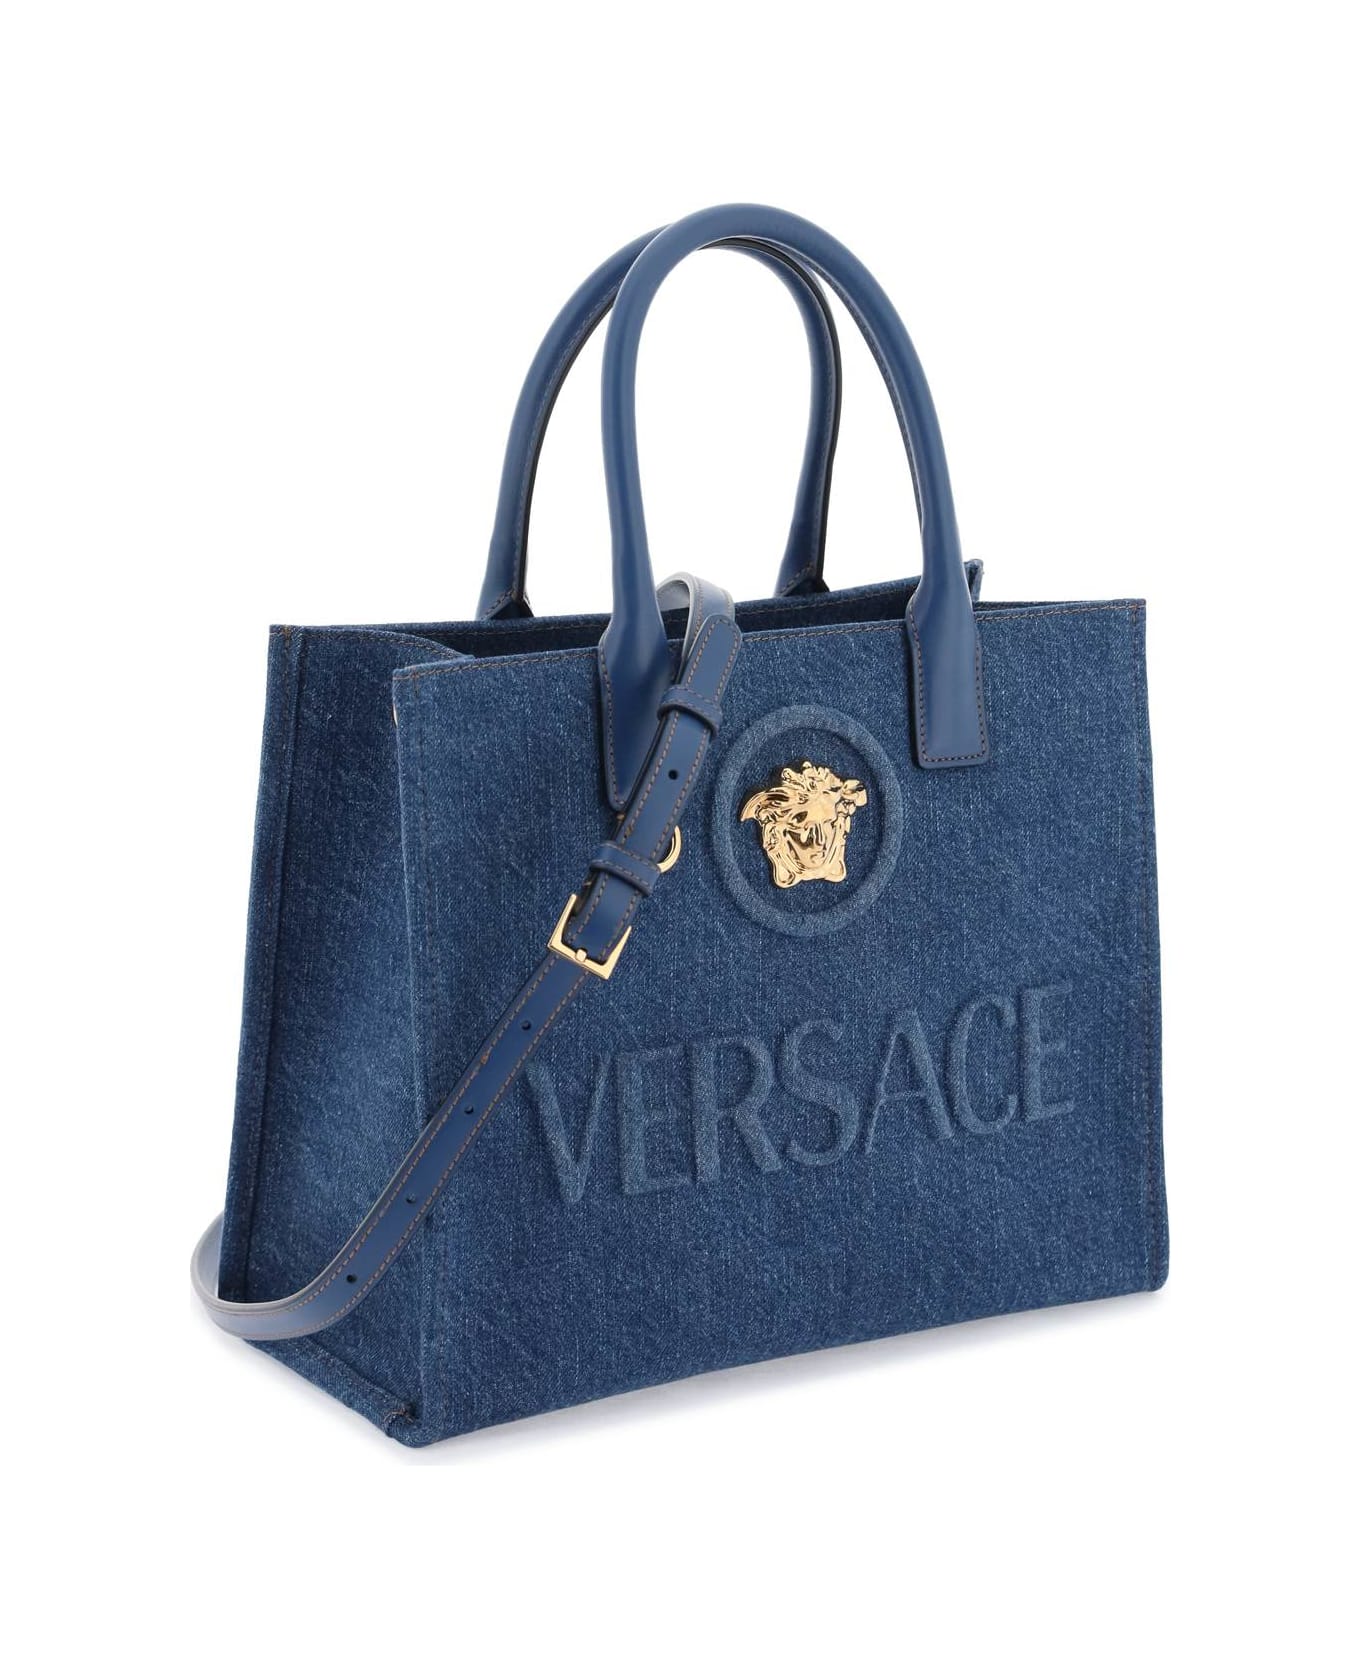 Versace Small 'la Medusa' Blue Cotton Shopper - NAVY BLUE VERSACE GOLD (Blue) トートバッグ